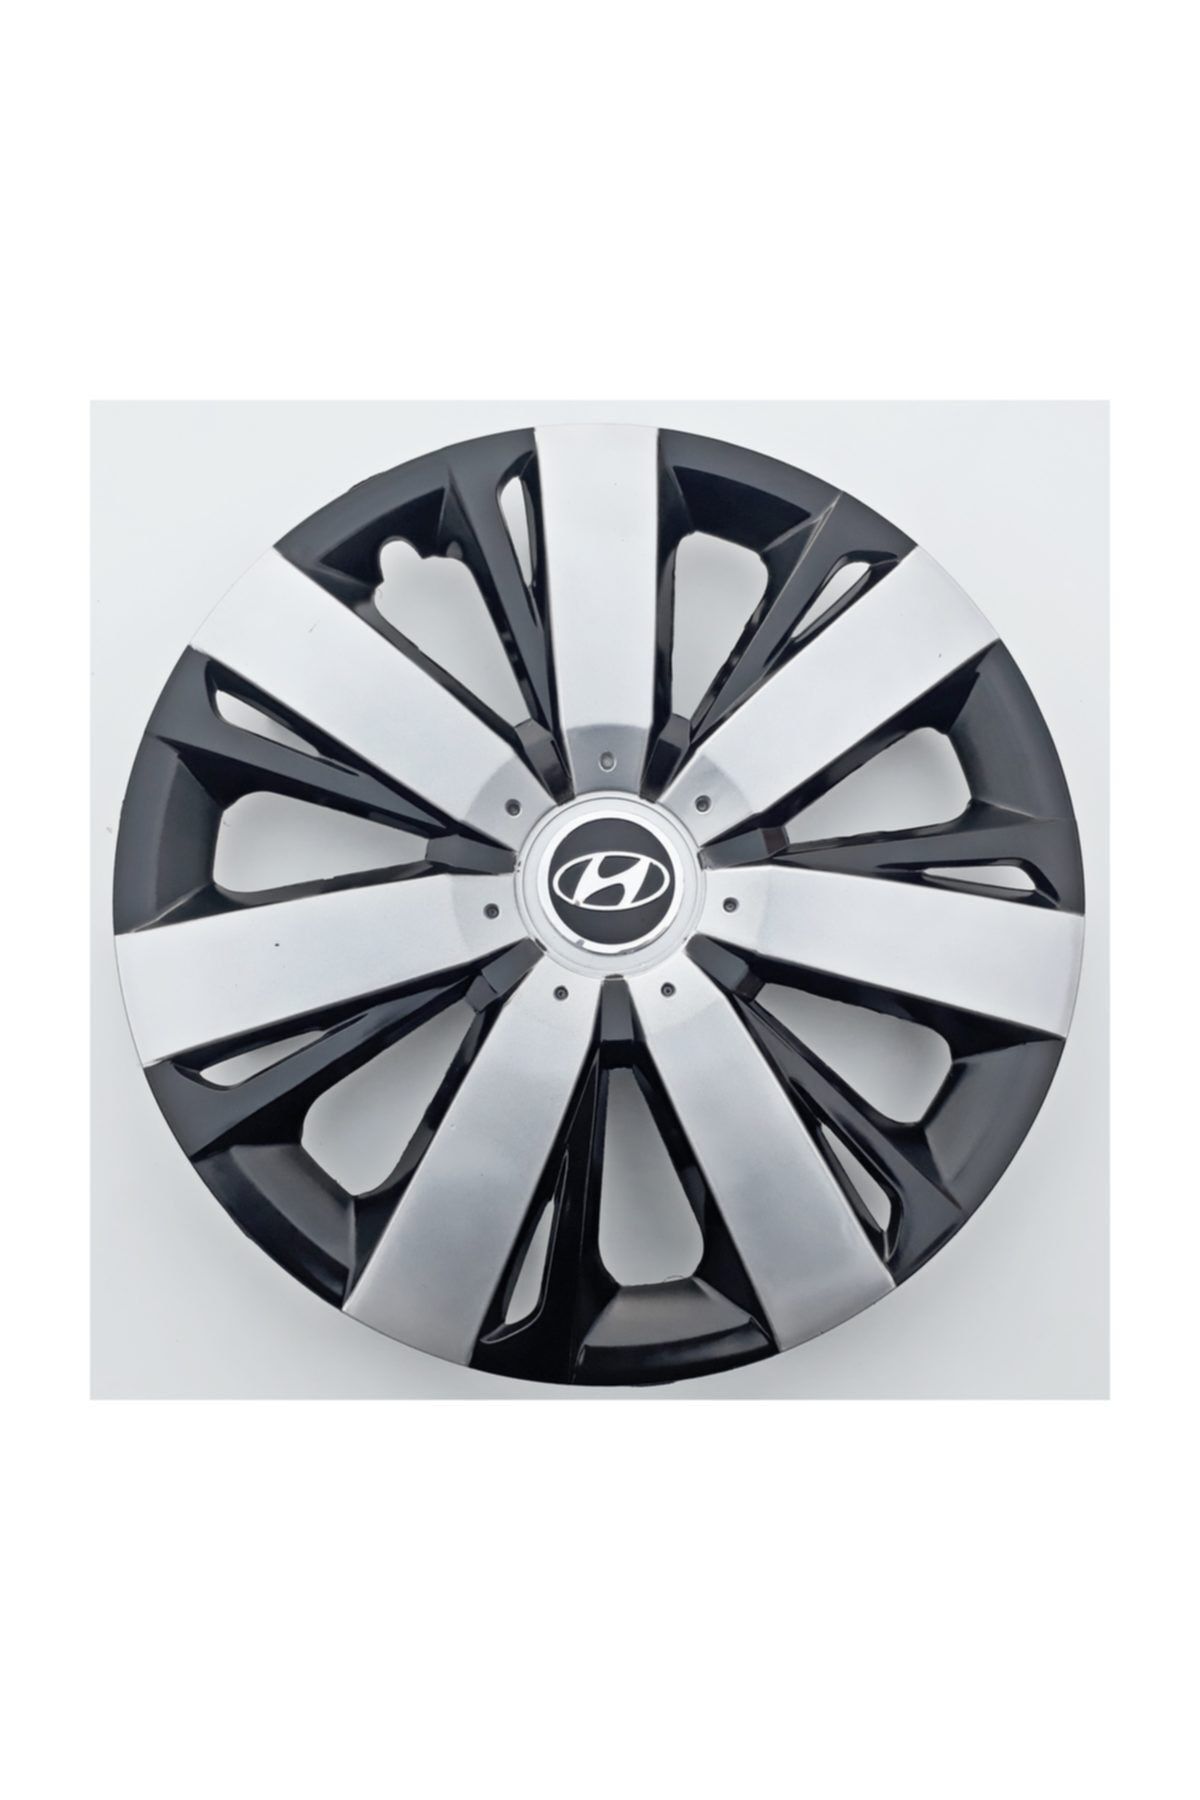 Genel Markalar 15'' Inç Hyundai Jant Kapağı 4 Adet Çelik Jant Görünümlü Renkli - Kırılmaz Esnek -